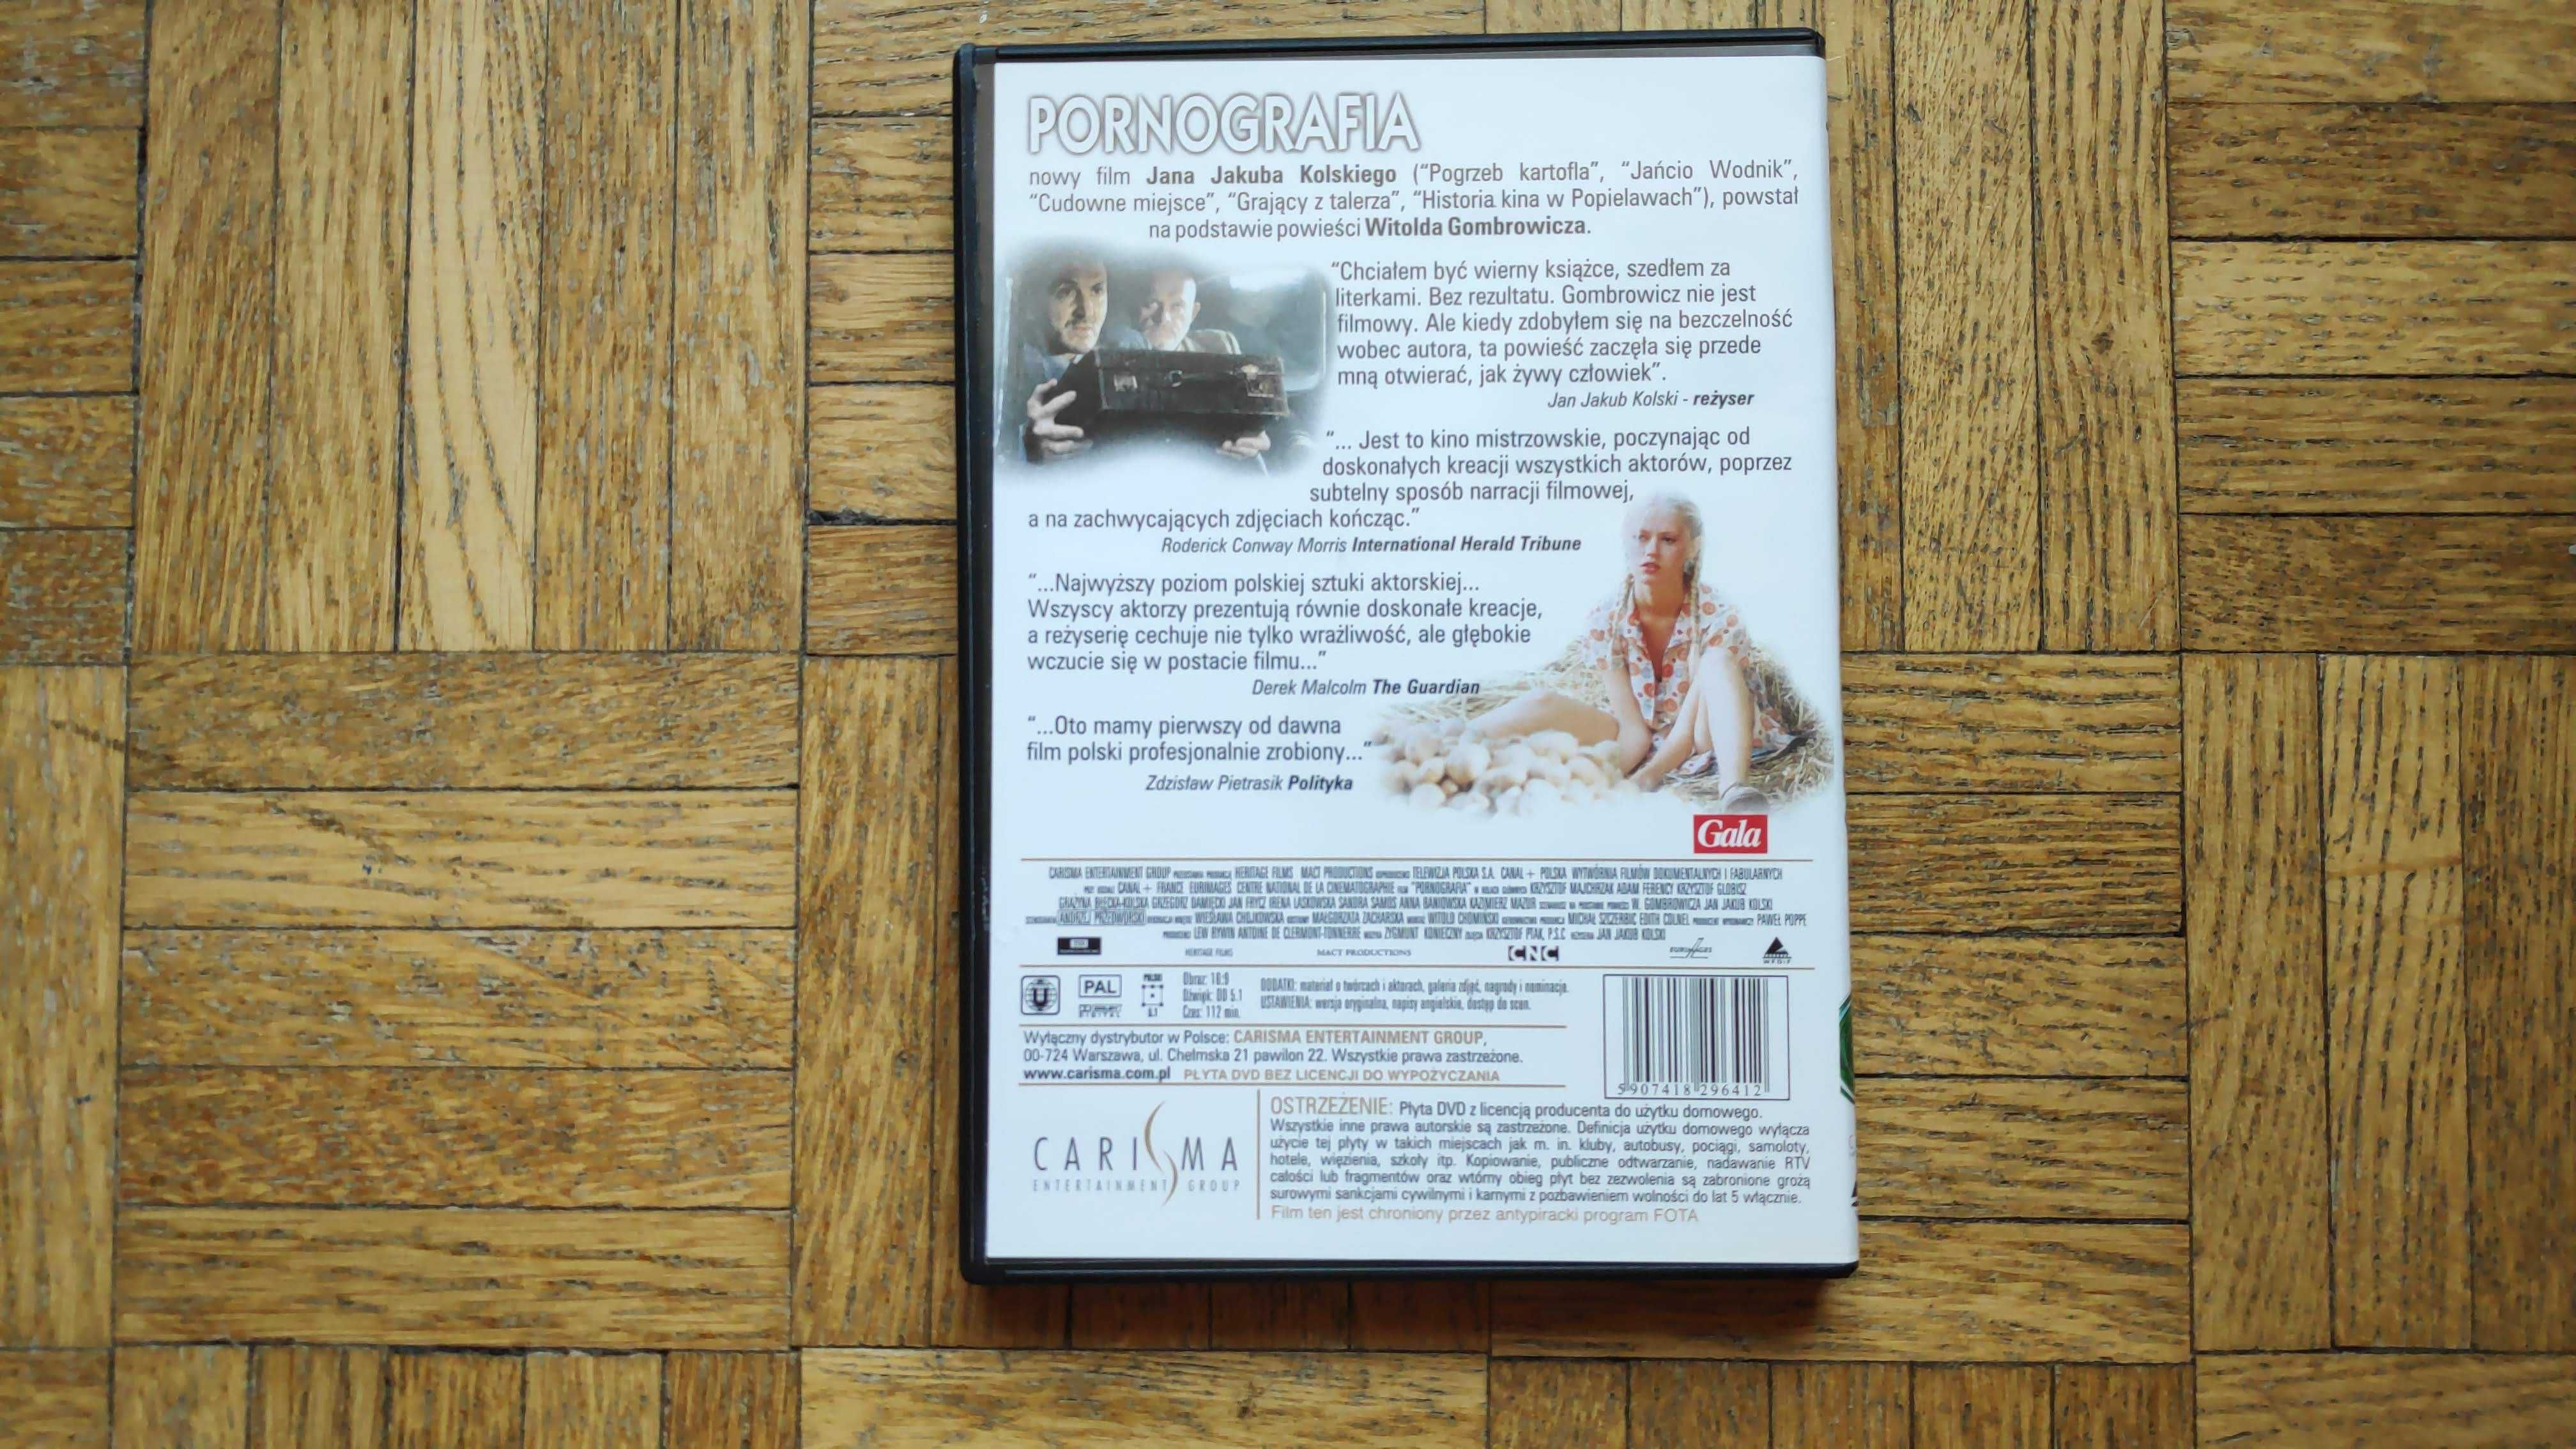 Pornografia (2003), film DVD